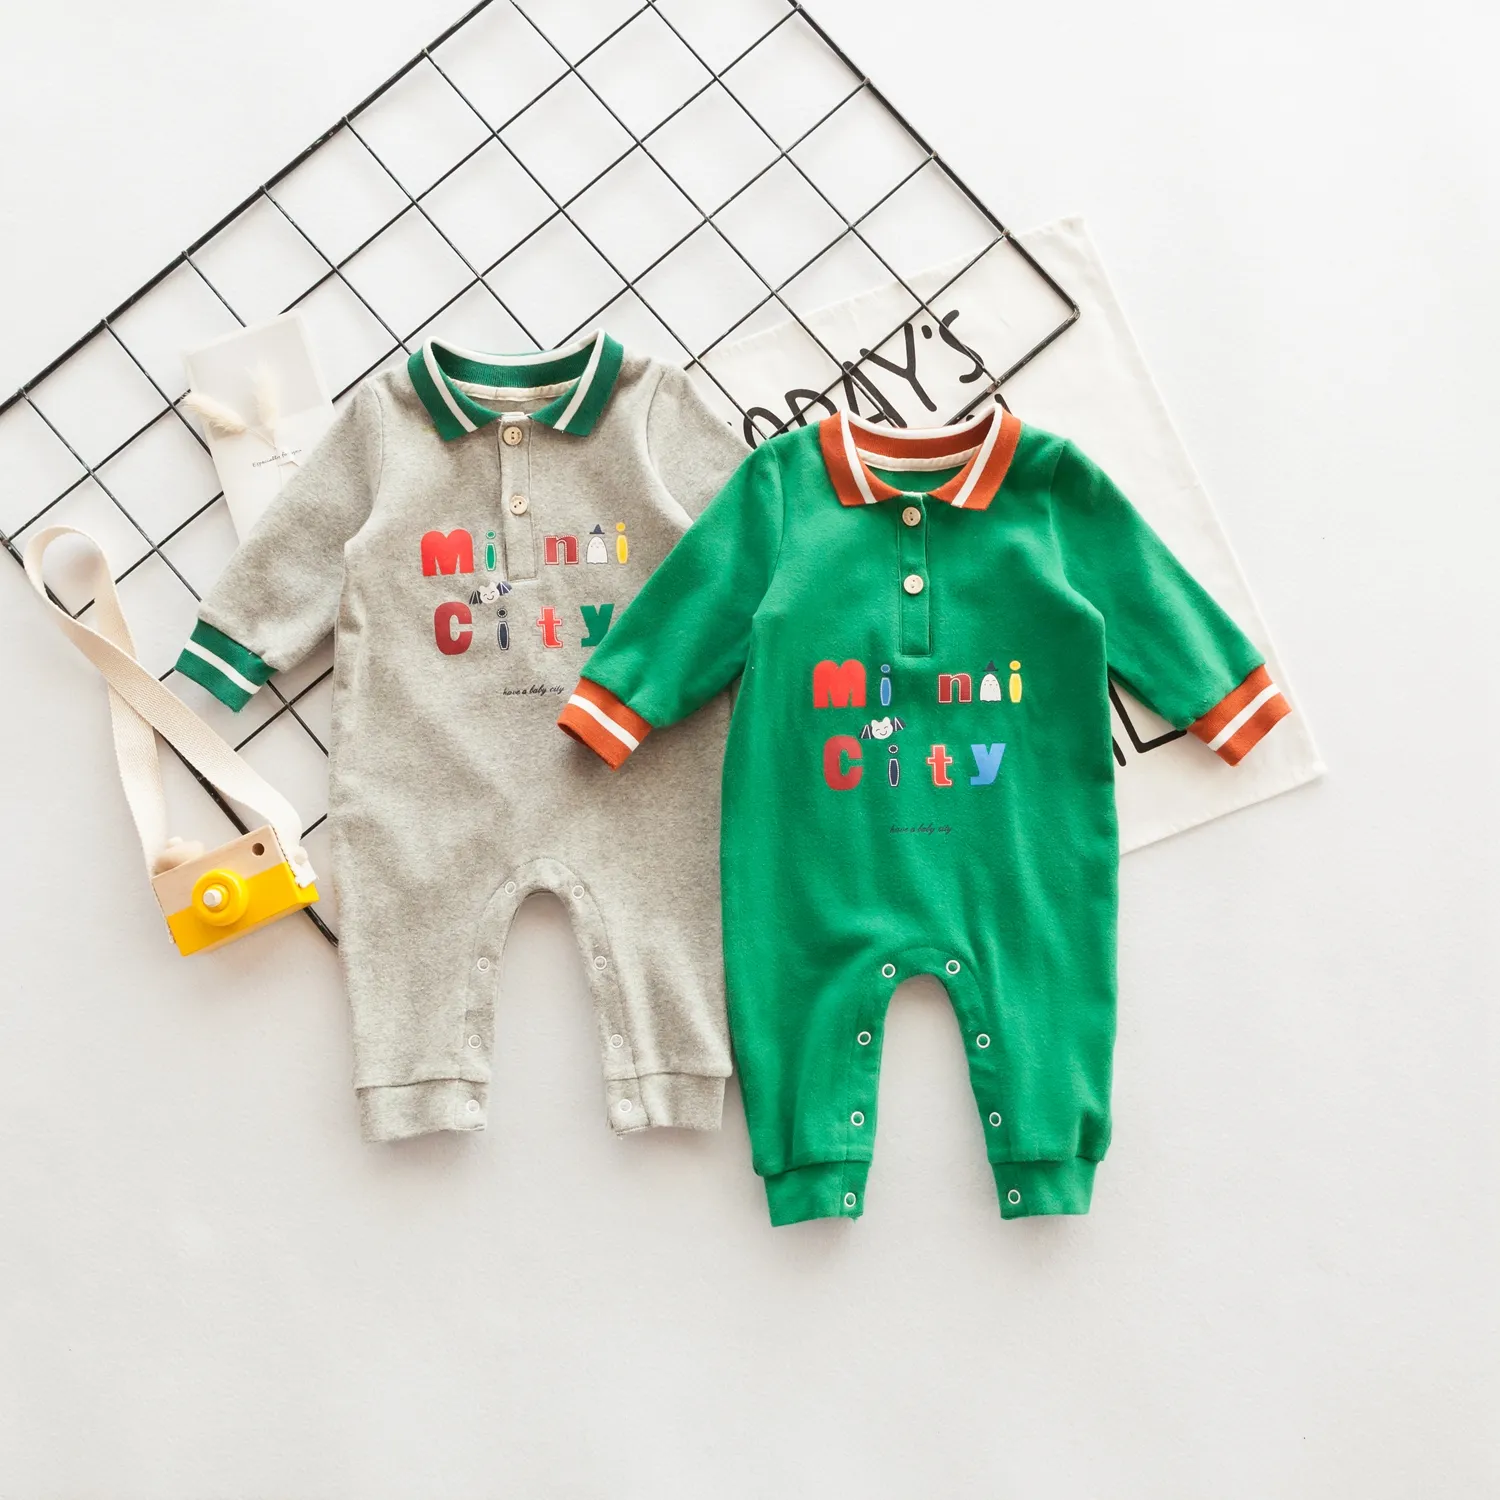 Novos produtos à procura de distribuidor meninos bolhas longas roupas infantis bebê menino macacão